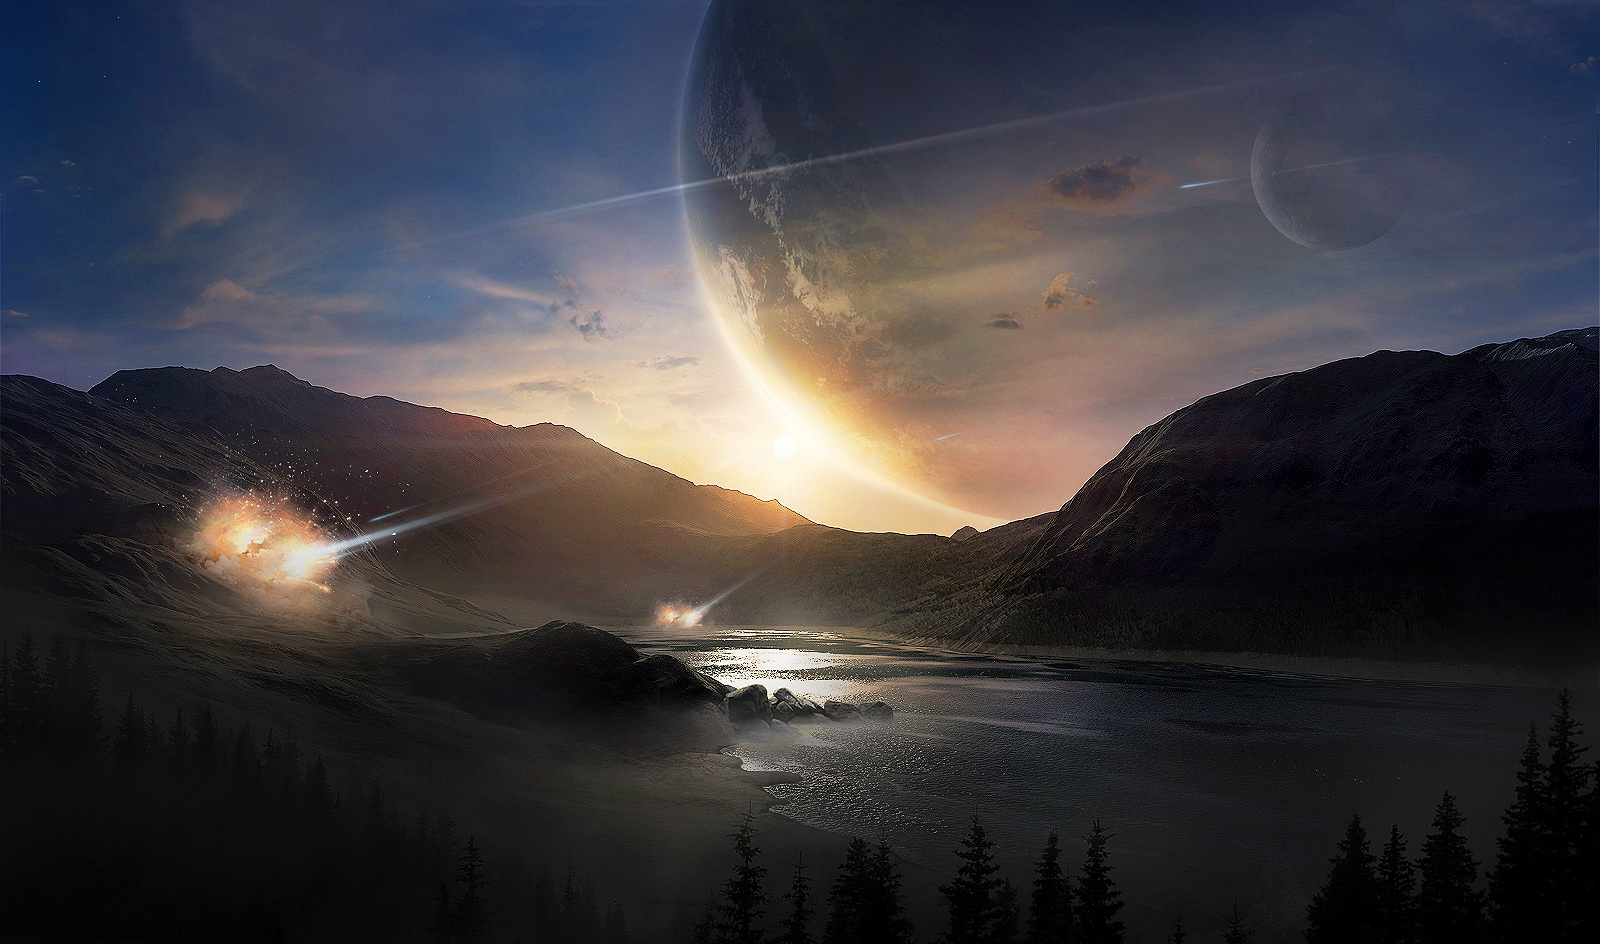 General 1600x944 planet landscape science fiction meteorite trees water mist sky Moon